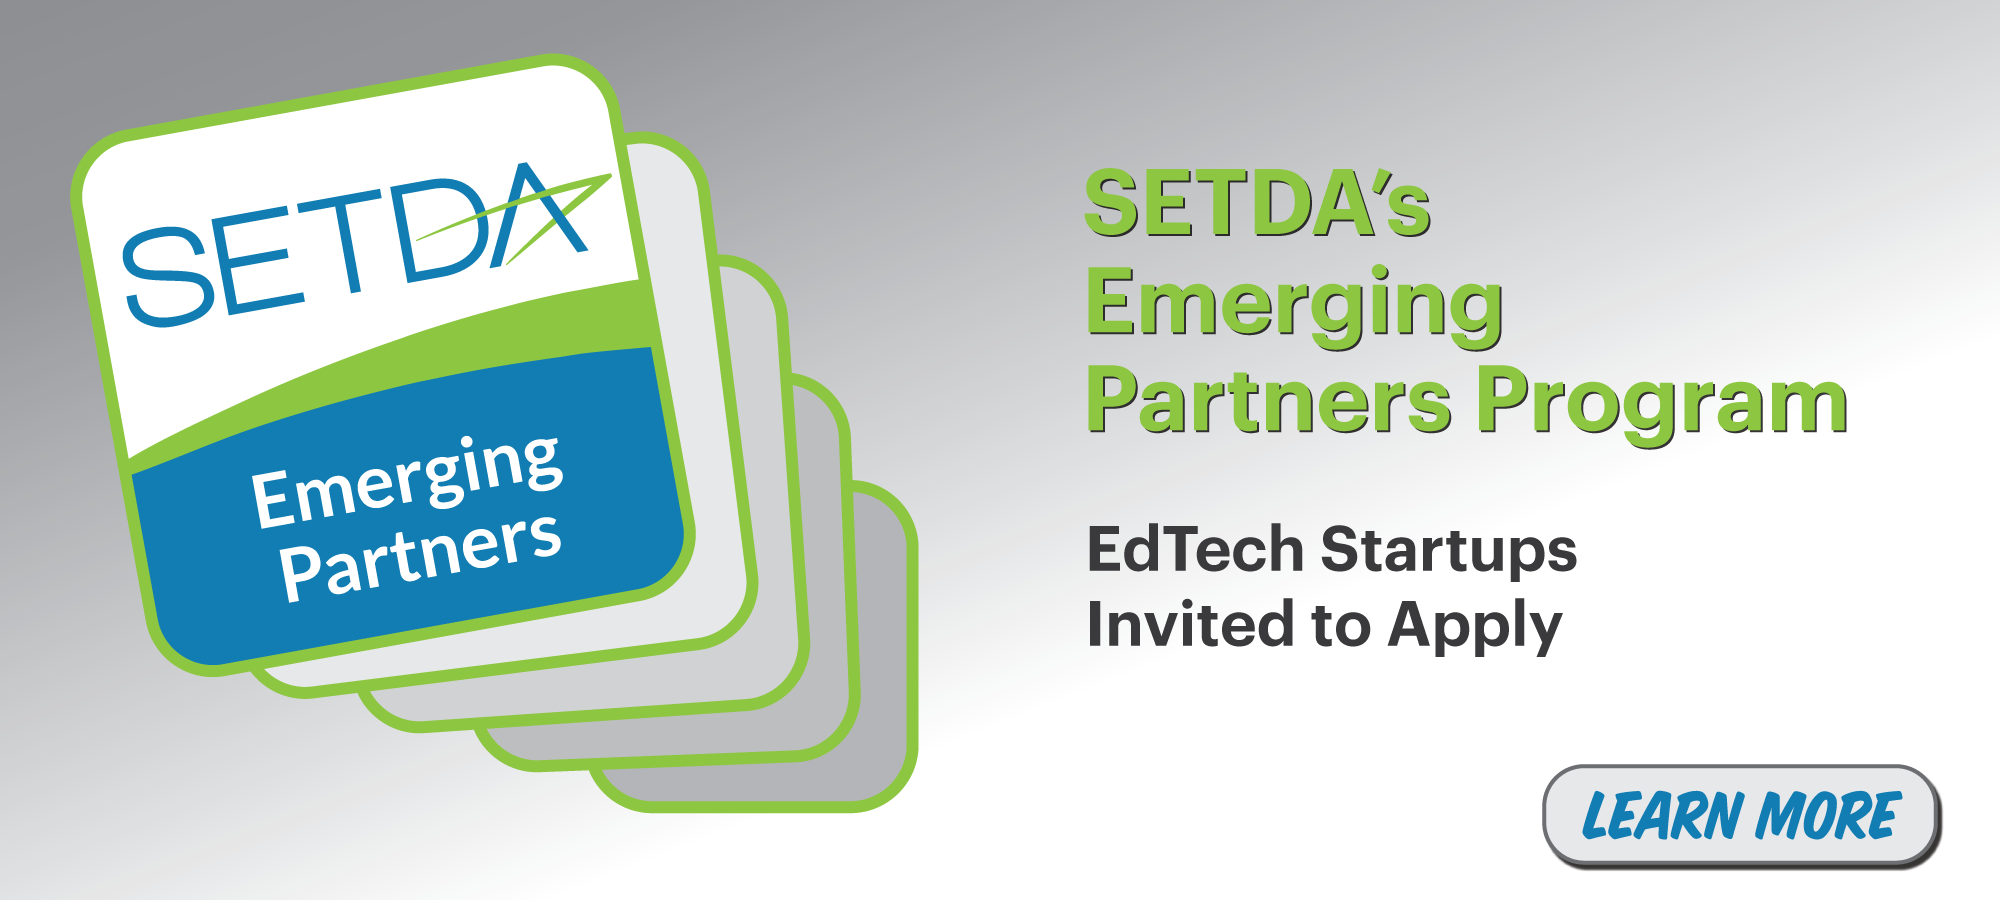 SETDA's Emerging Partners Program